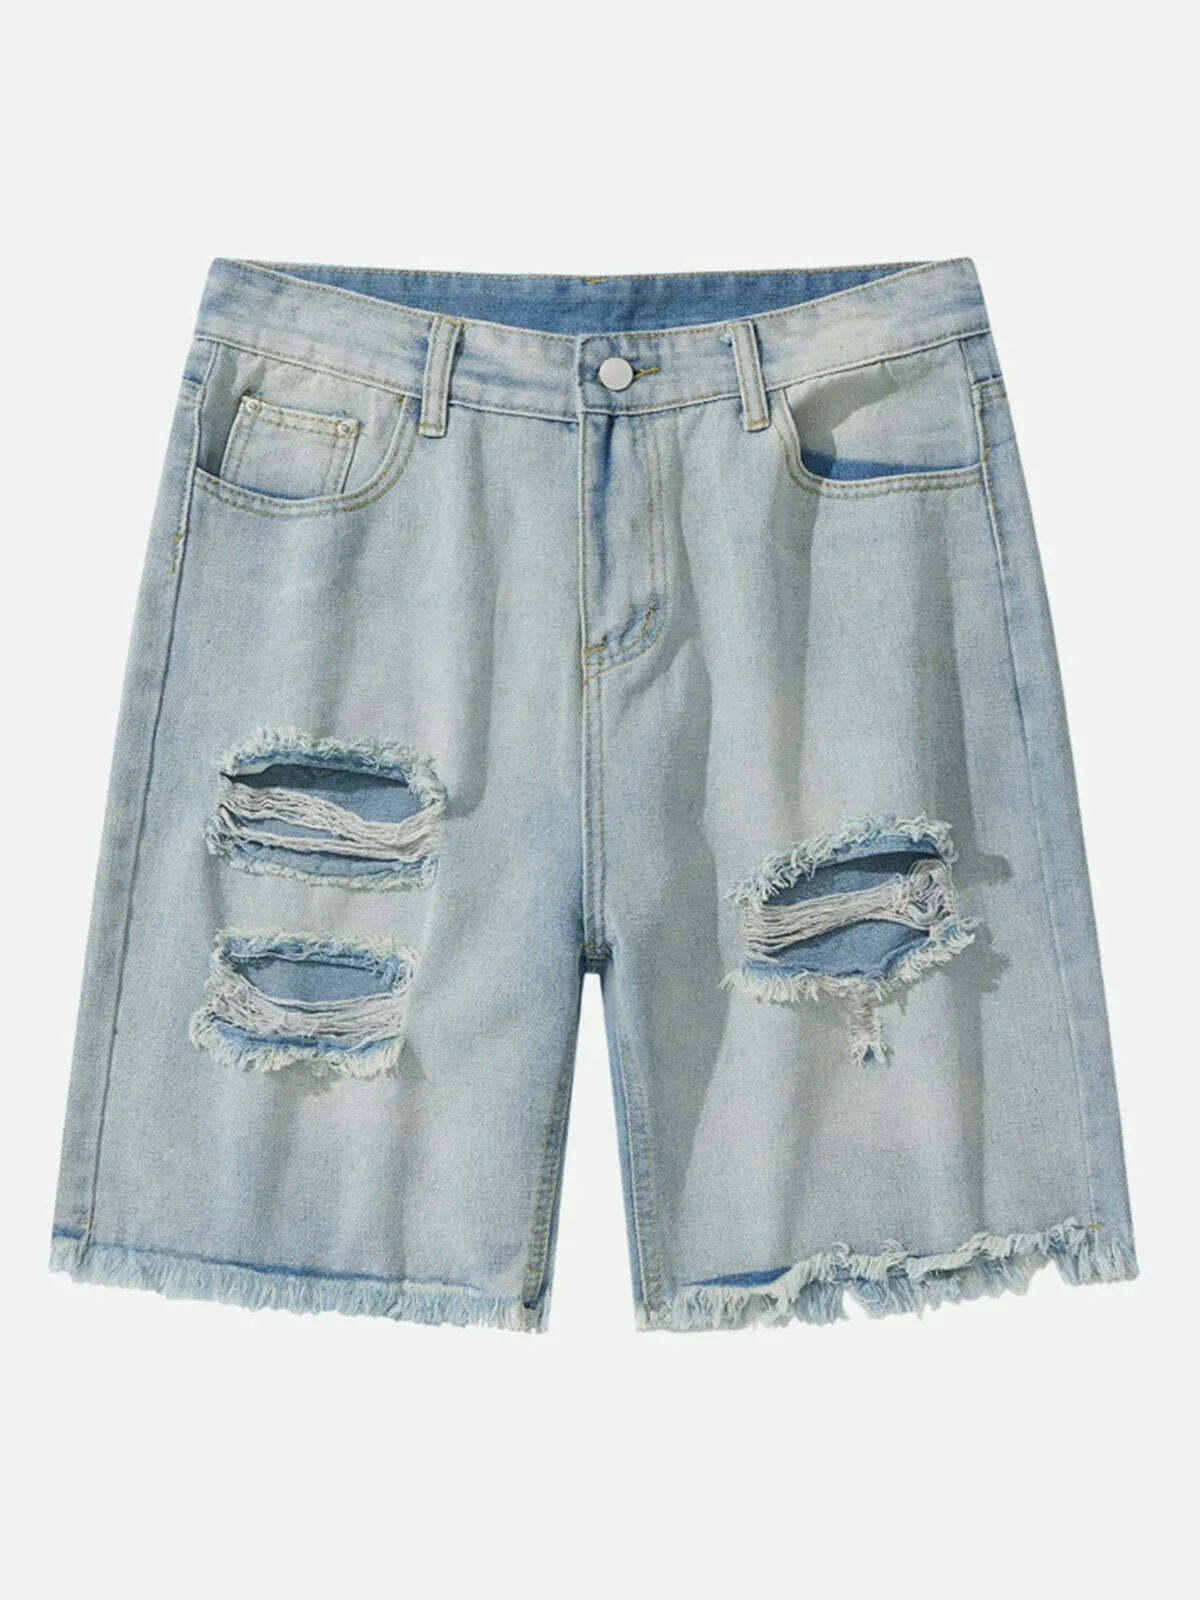 vintage washed denim shorts retro & urban style 2211